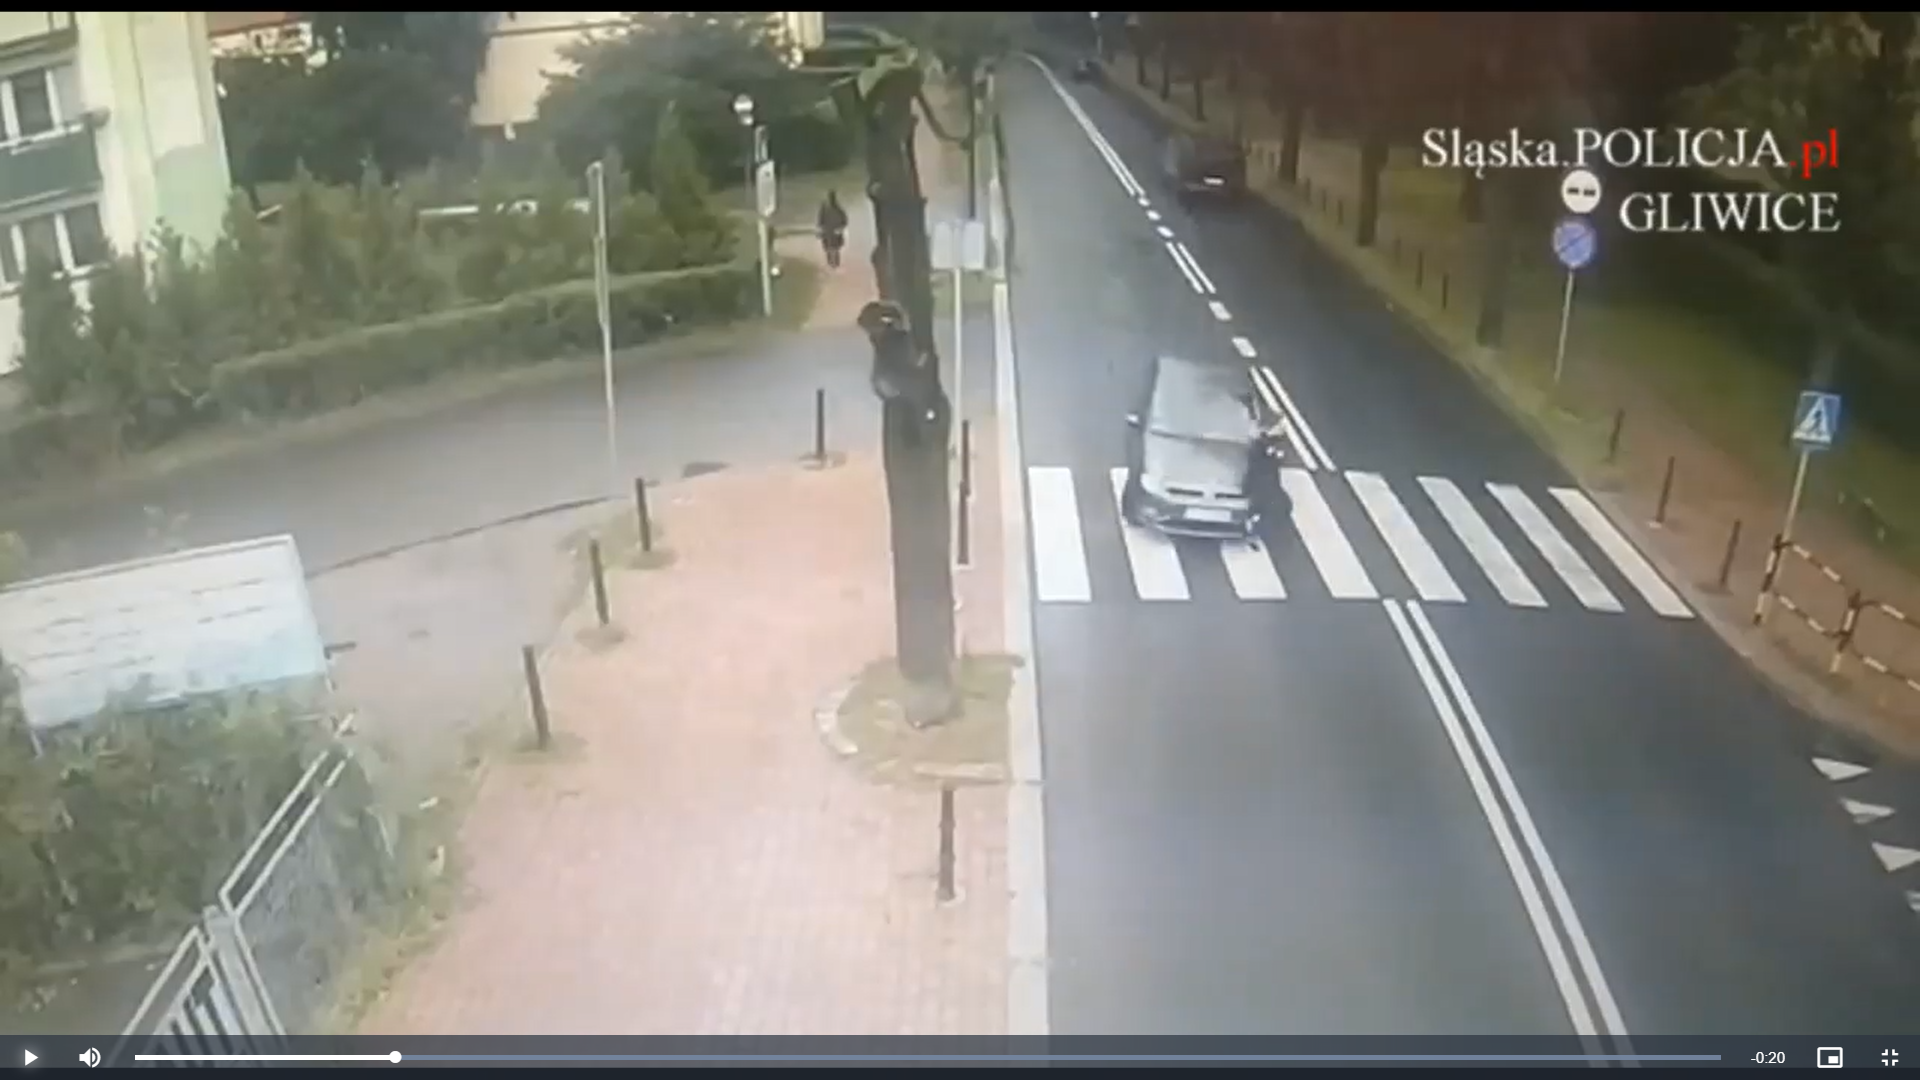 Gliwice: 18-latkę potrąciło auto. Policja publikuje nagranie z kamer  [wideo] - Wiadomości